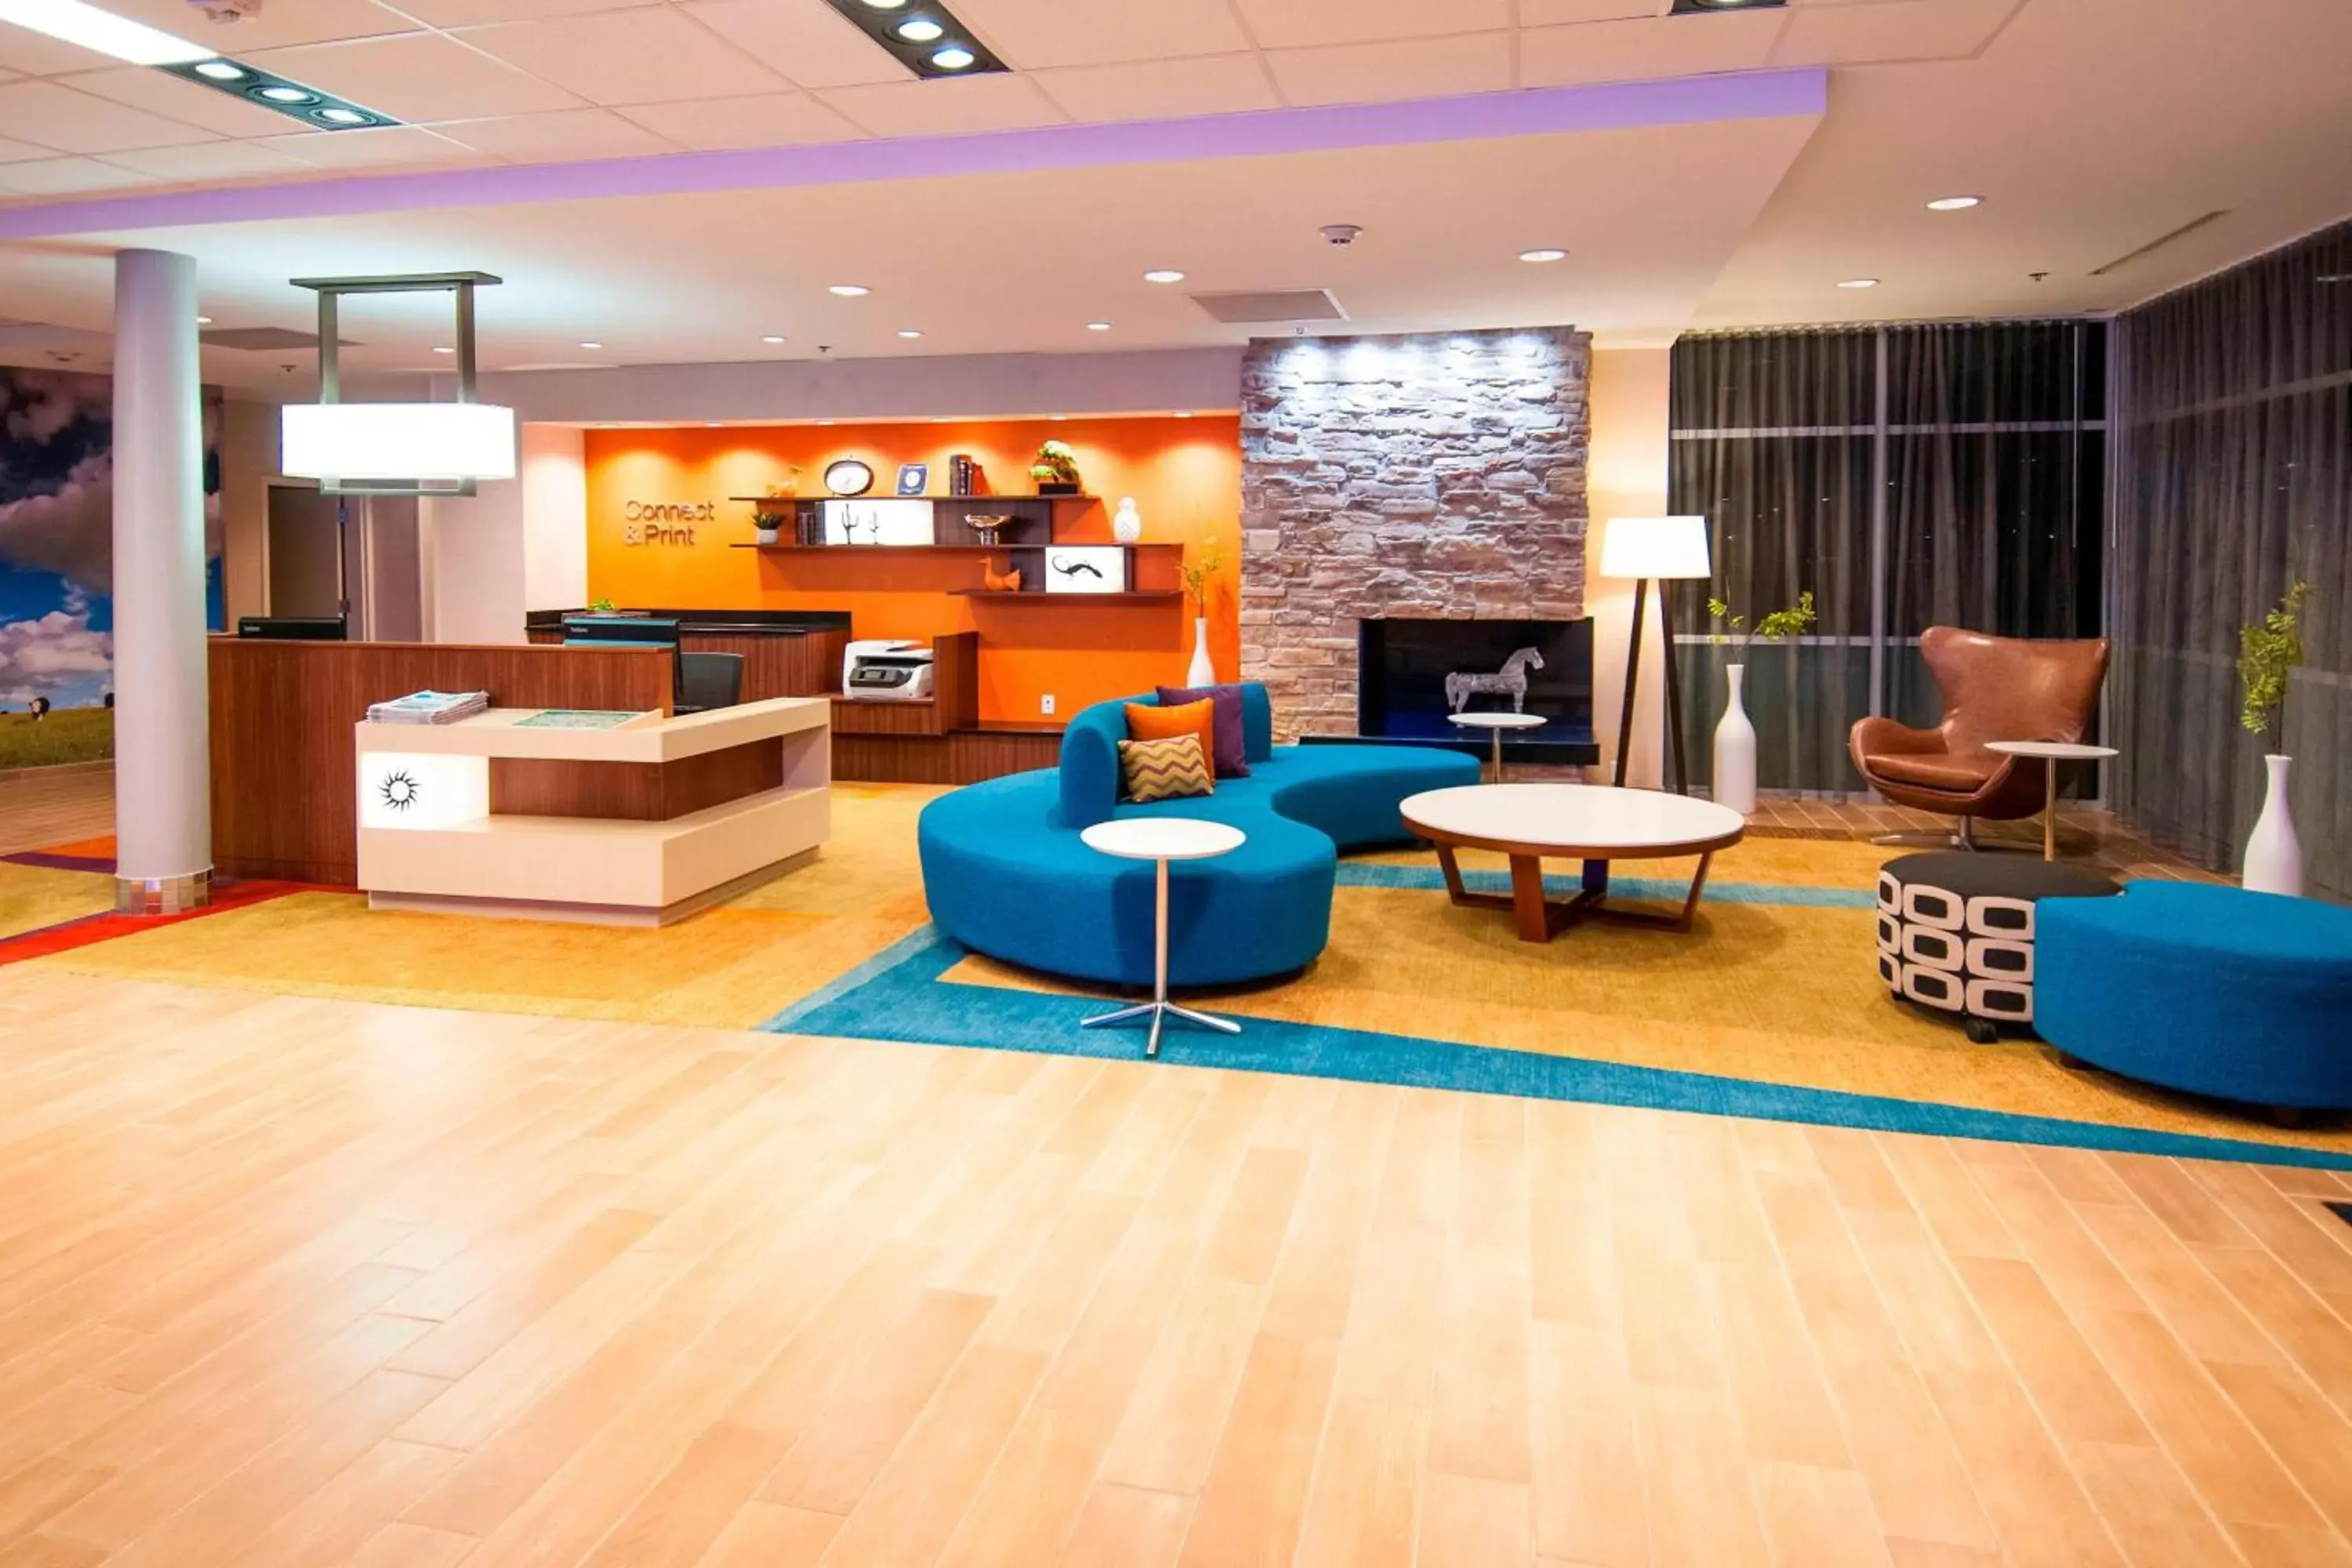 Lobby or reception, Lobby/Reception in Fairfield Inn & Suites by Marriott San Antonio Brooks City Base